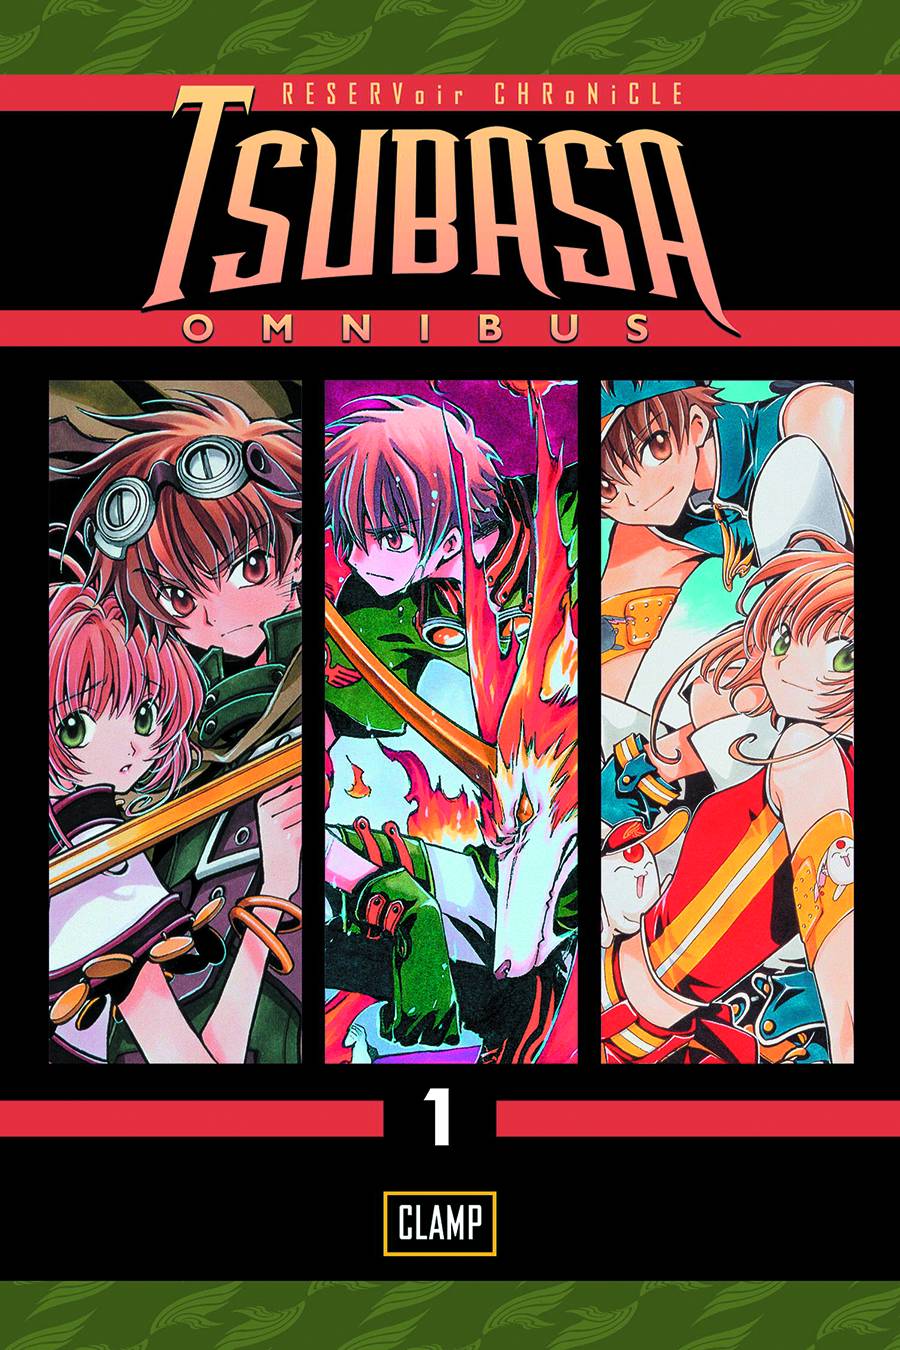 Tsubasa Omnibus Manga Volume 1